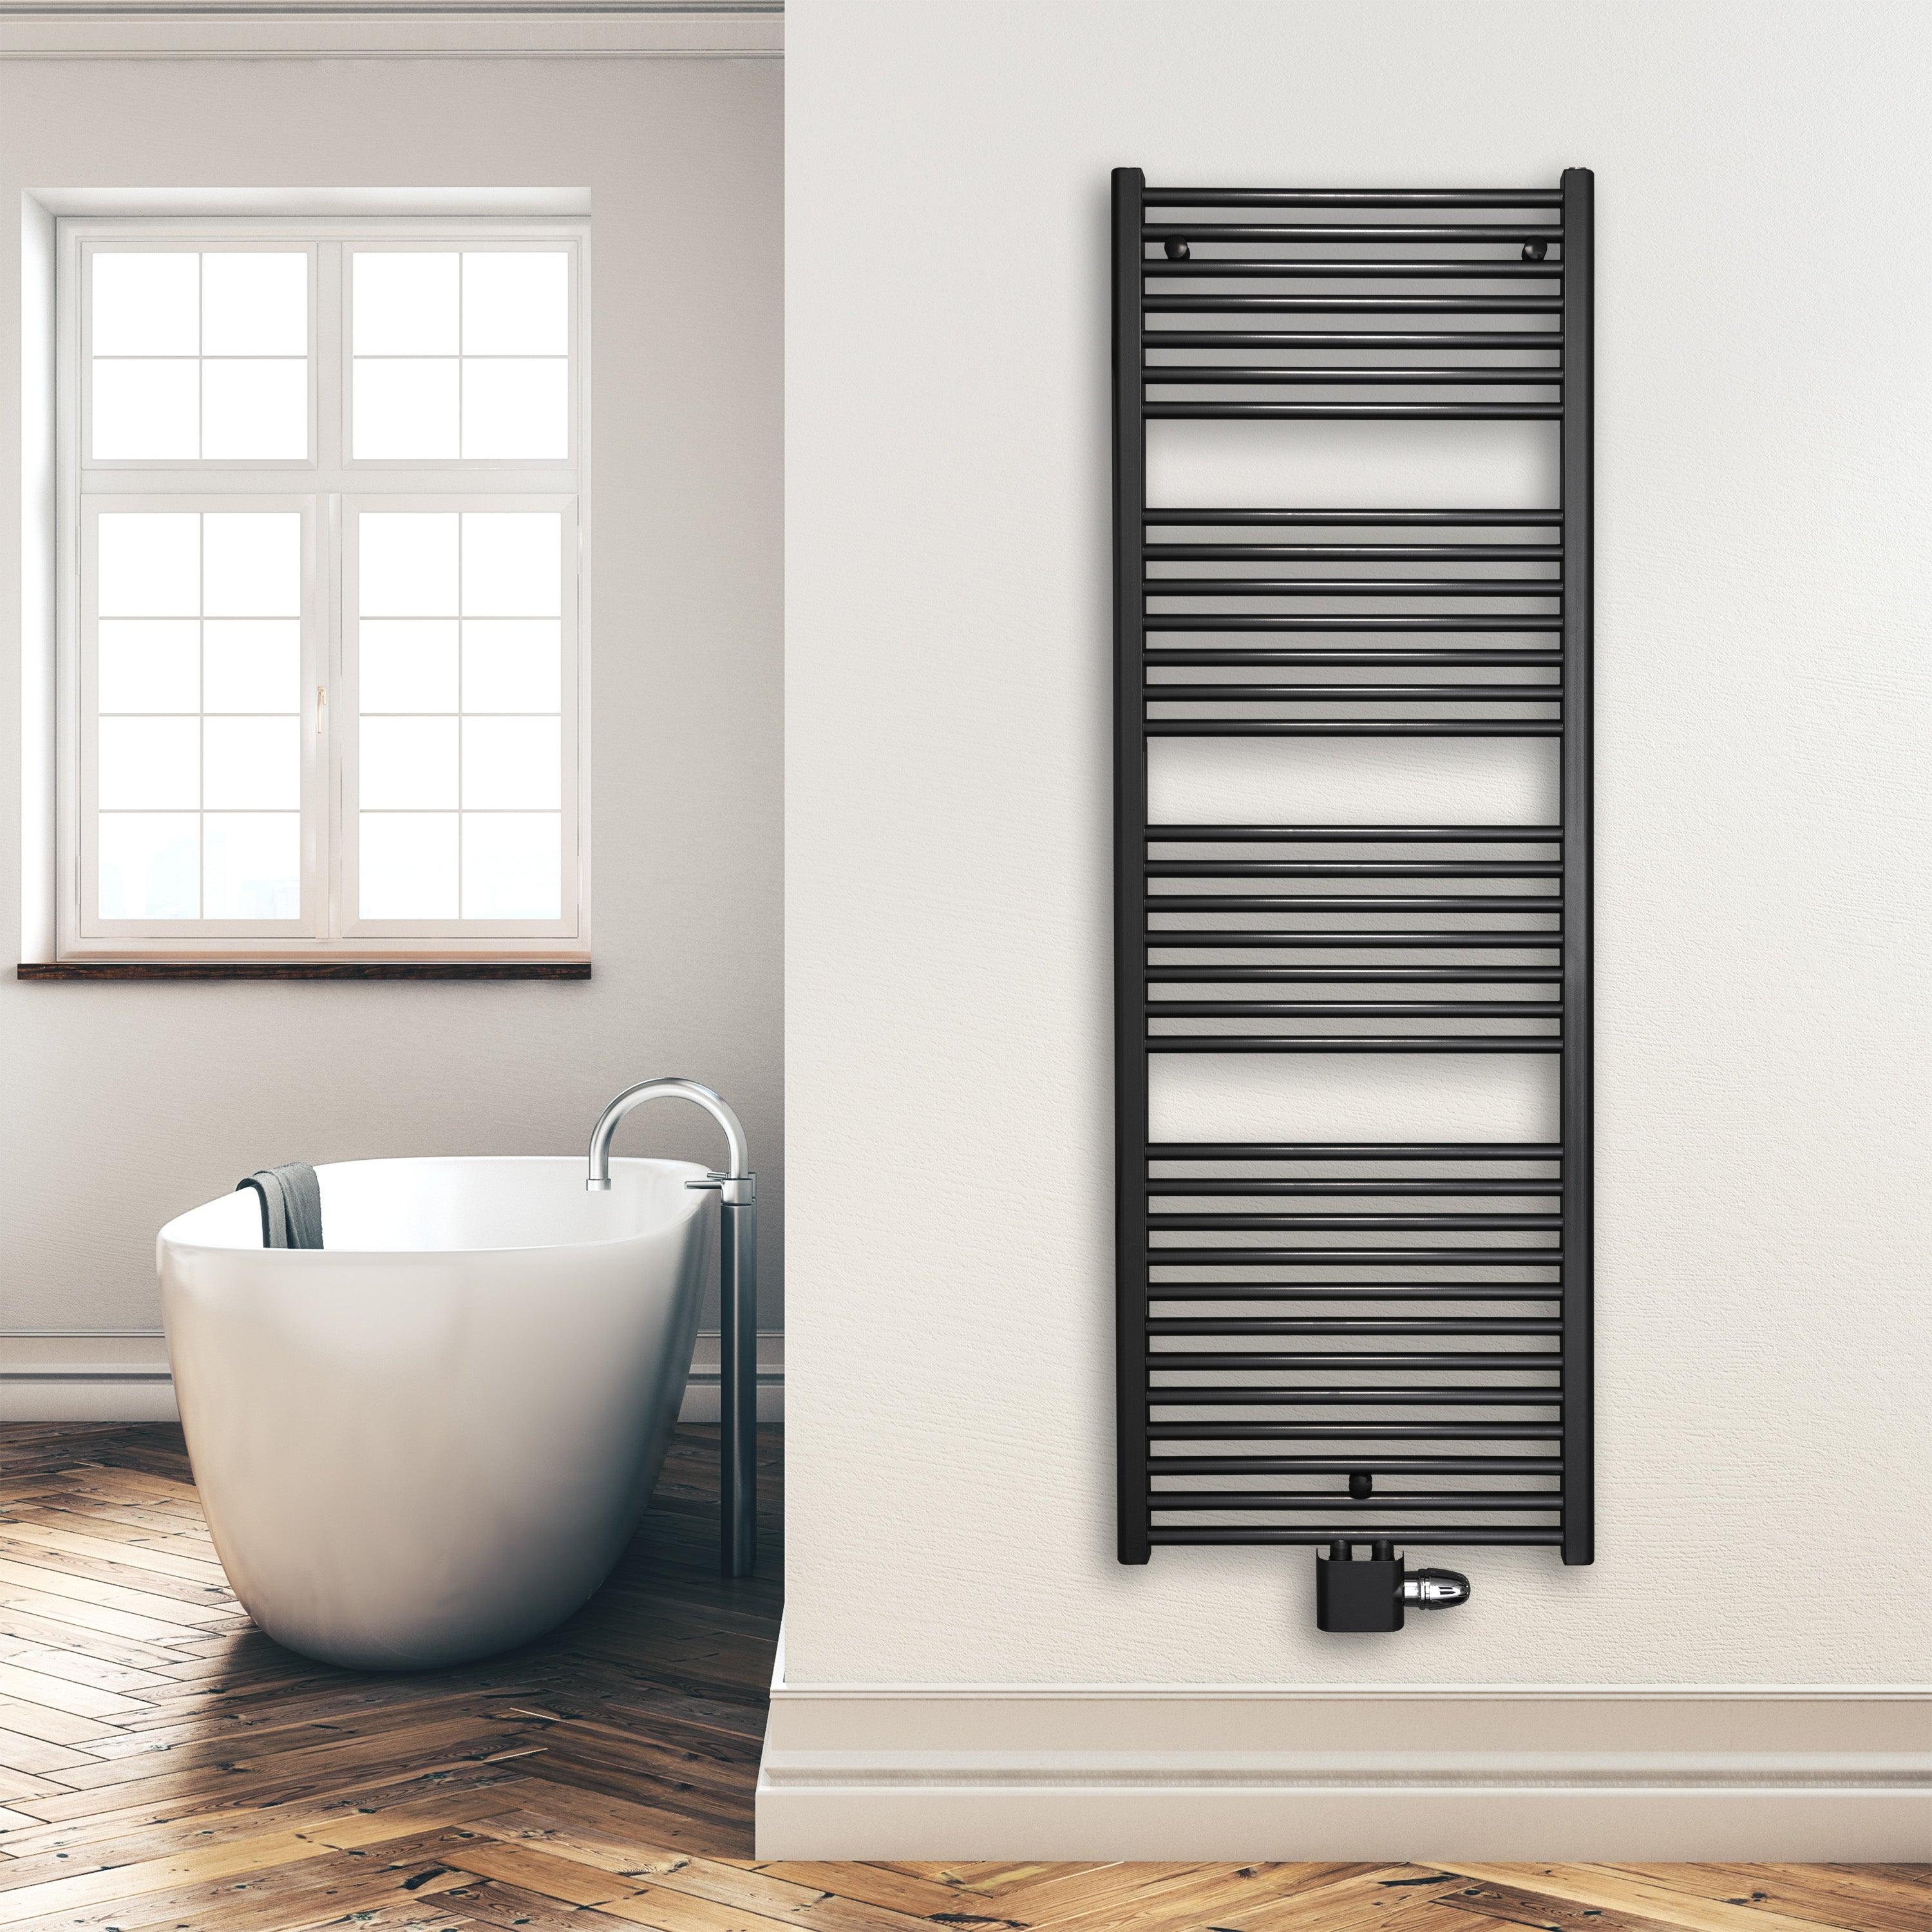 Badheizkörper 1732 x 600 mm gerade mit Mittenanschluss Handtuchhalter Badezimmer Heizung Handtuchwärmer schwarz Montagebeispiel - heizkoerper.shop